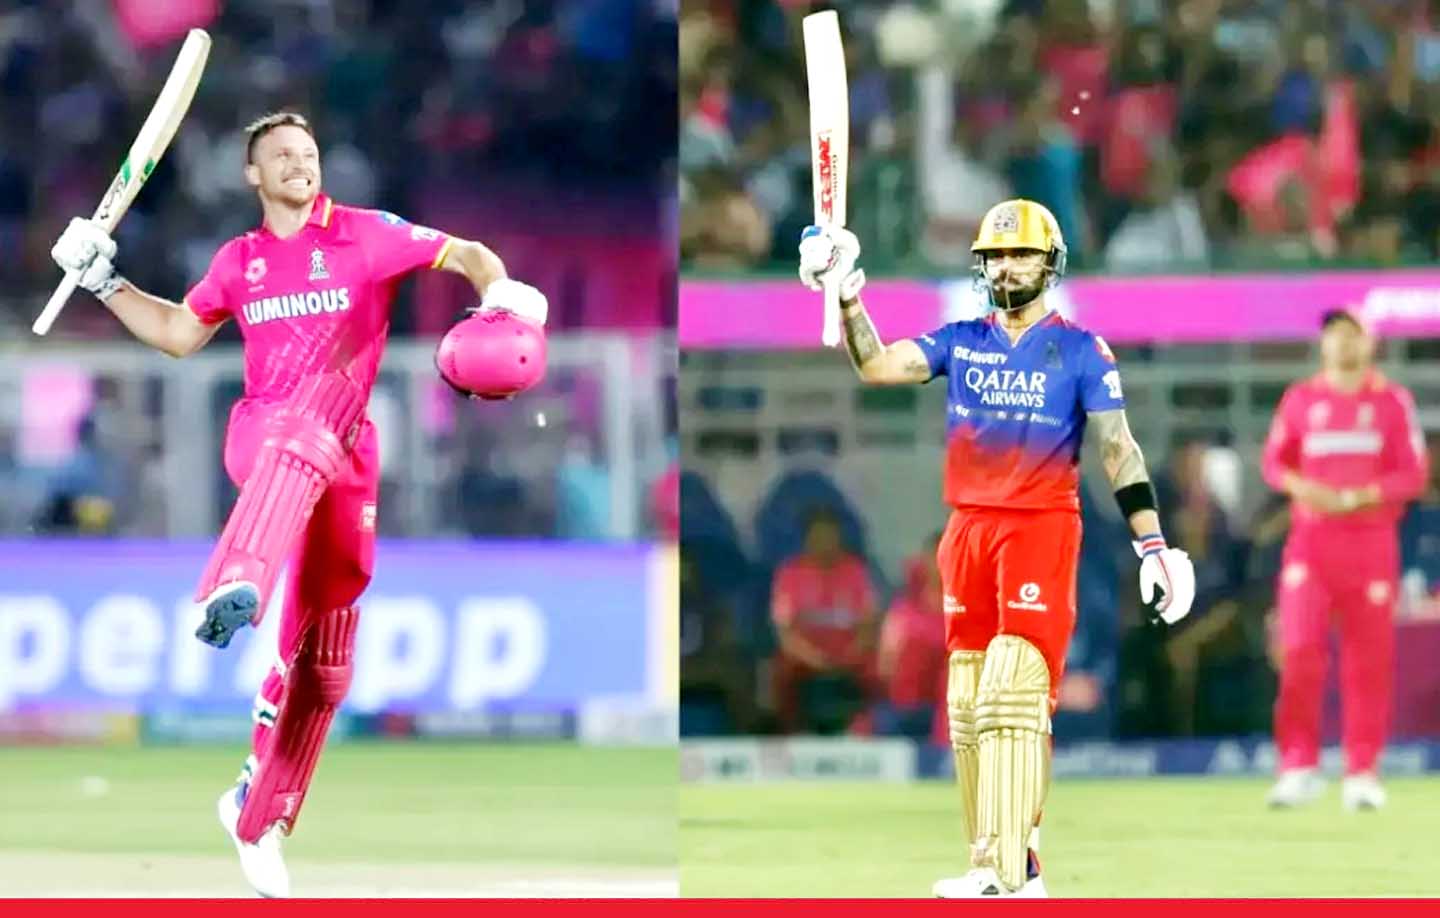 राजस्थान ने बेंगलुरु को 6 विकेट से हराया, कोहली-बटलर की शतकीय पारी